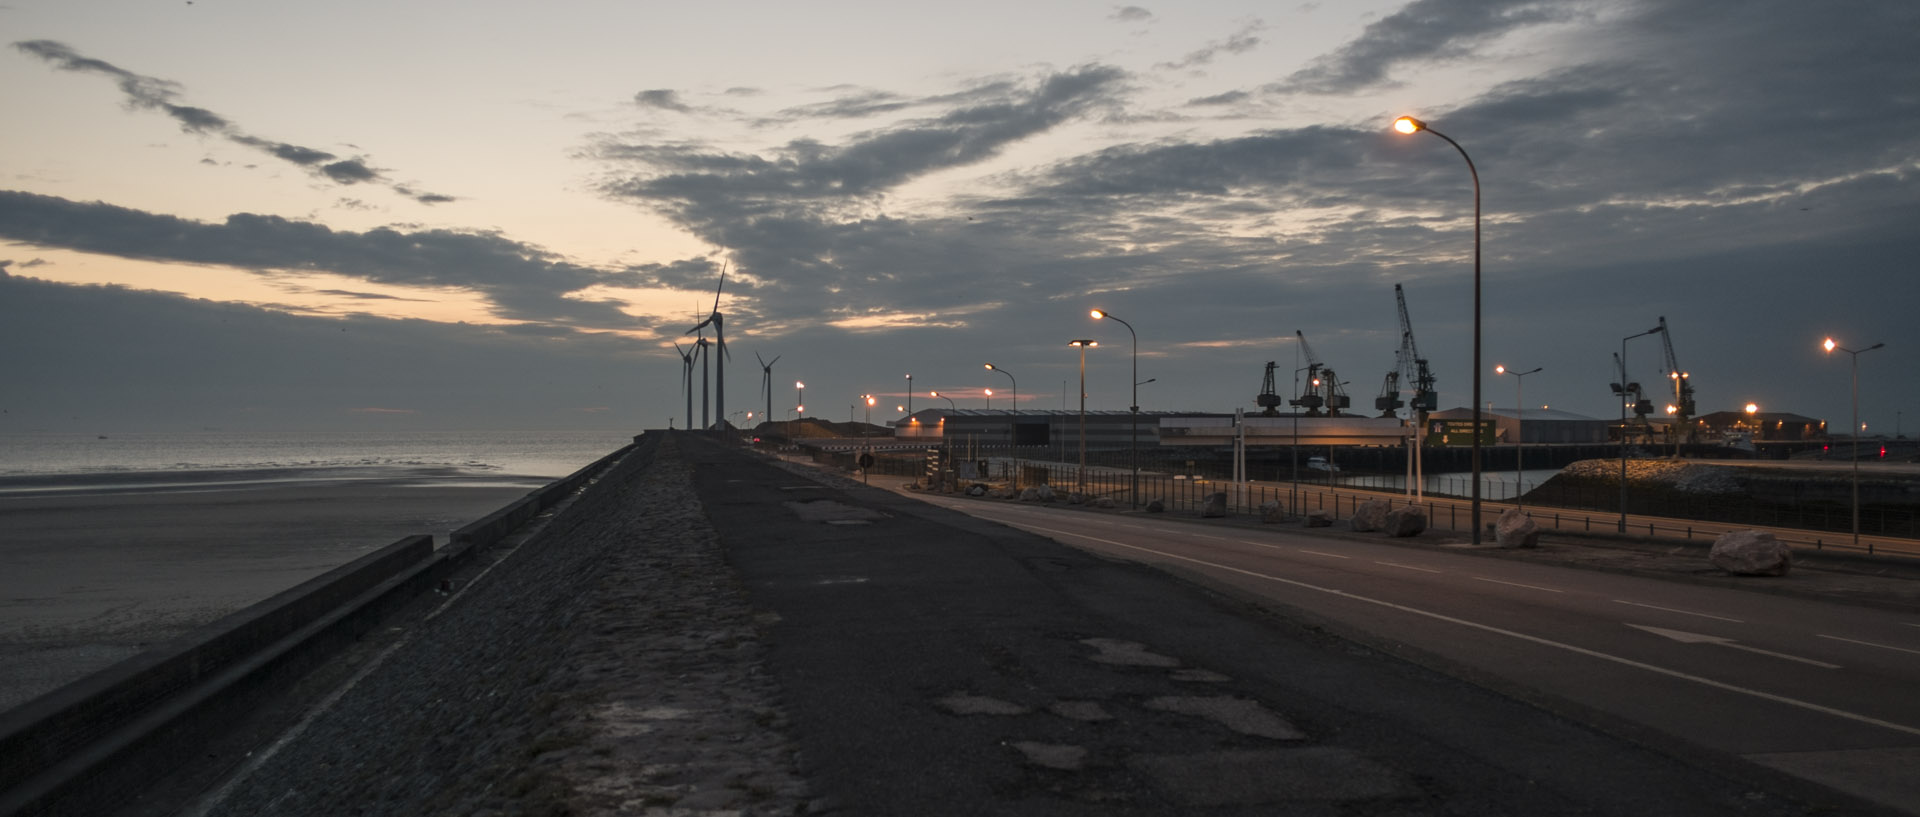 Lundi 2 juin 2014, 22:27, port de commerce, Boulogne sur mer